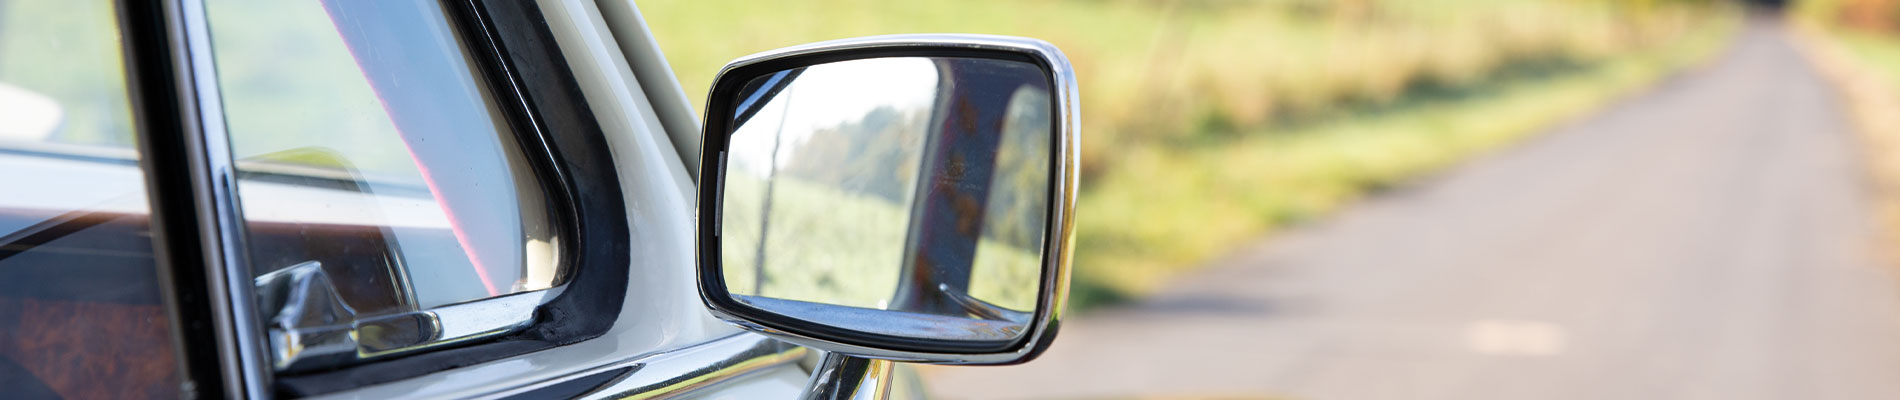 Spiegel Auto - Mirror car Photos